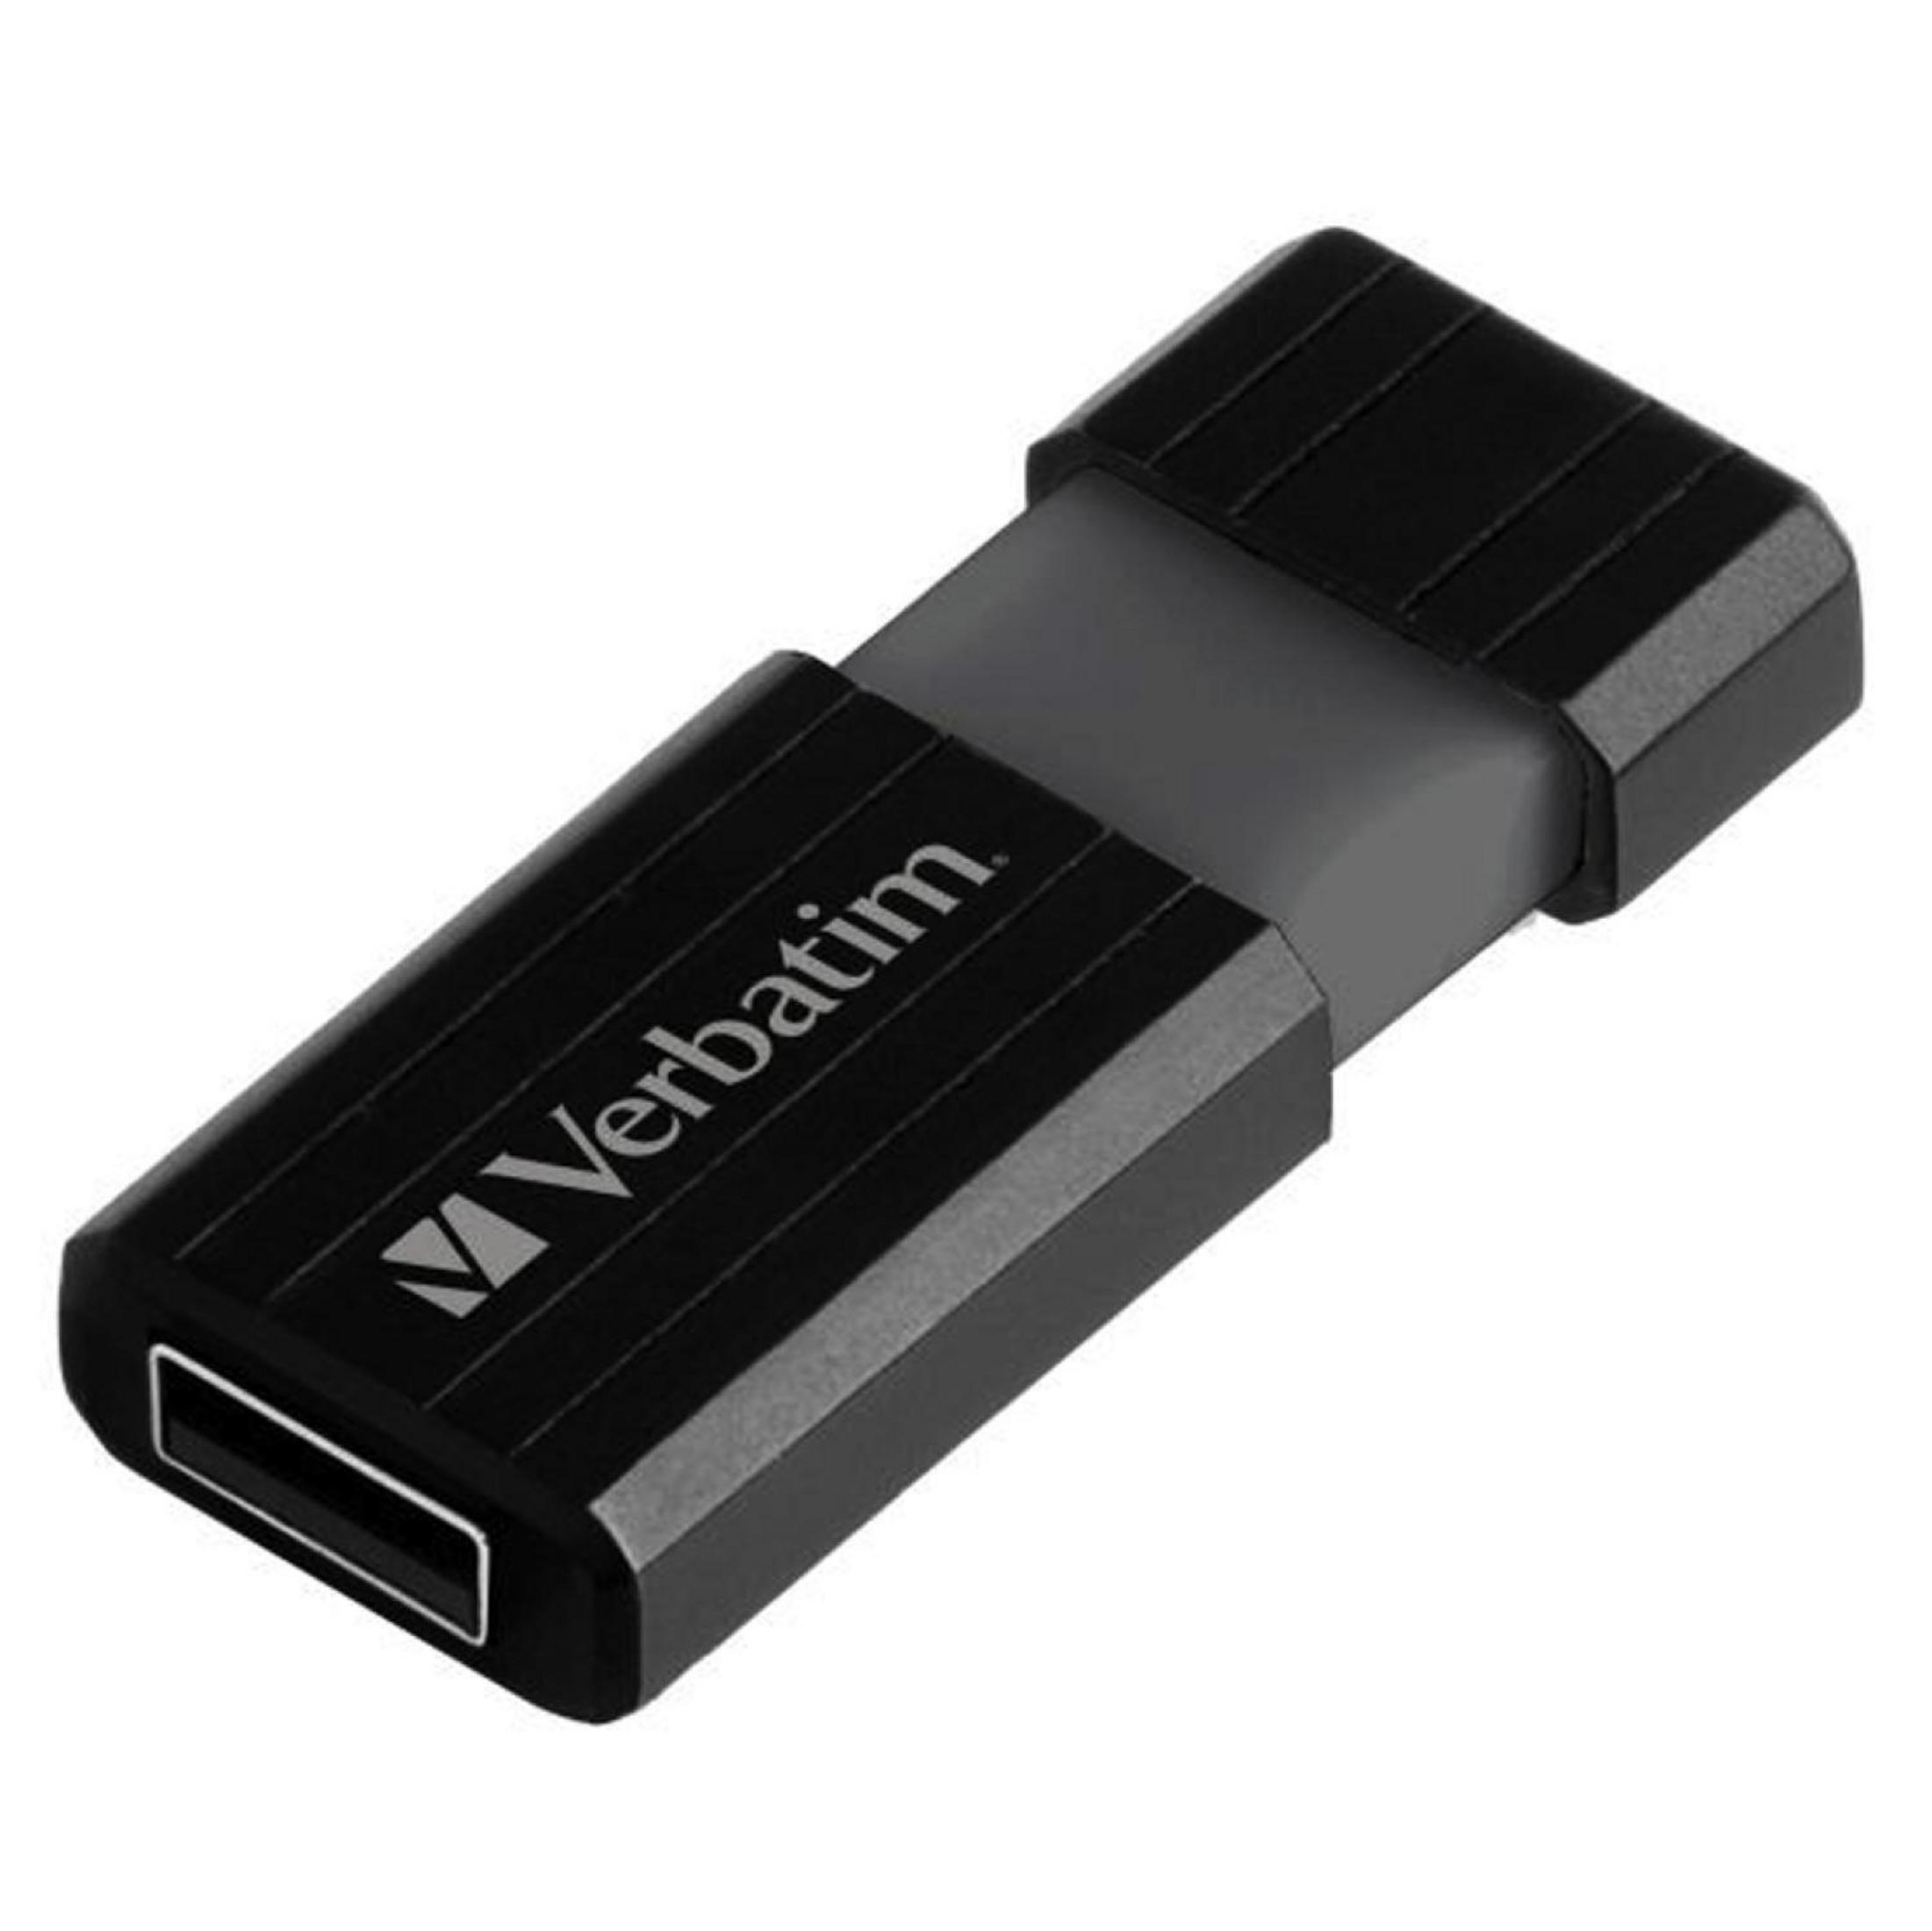 VERBATIM 49062 8GB STRIPE 8 DRIVE 2.0 USB GB) PIN (Schwarz, USB-Stick